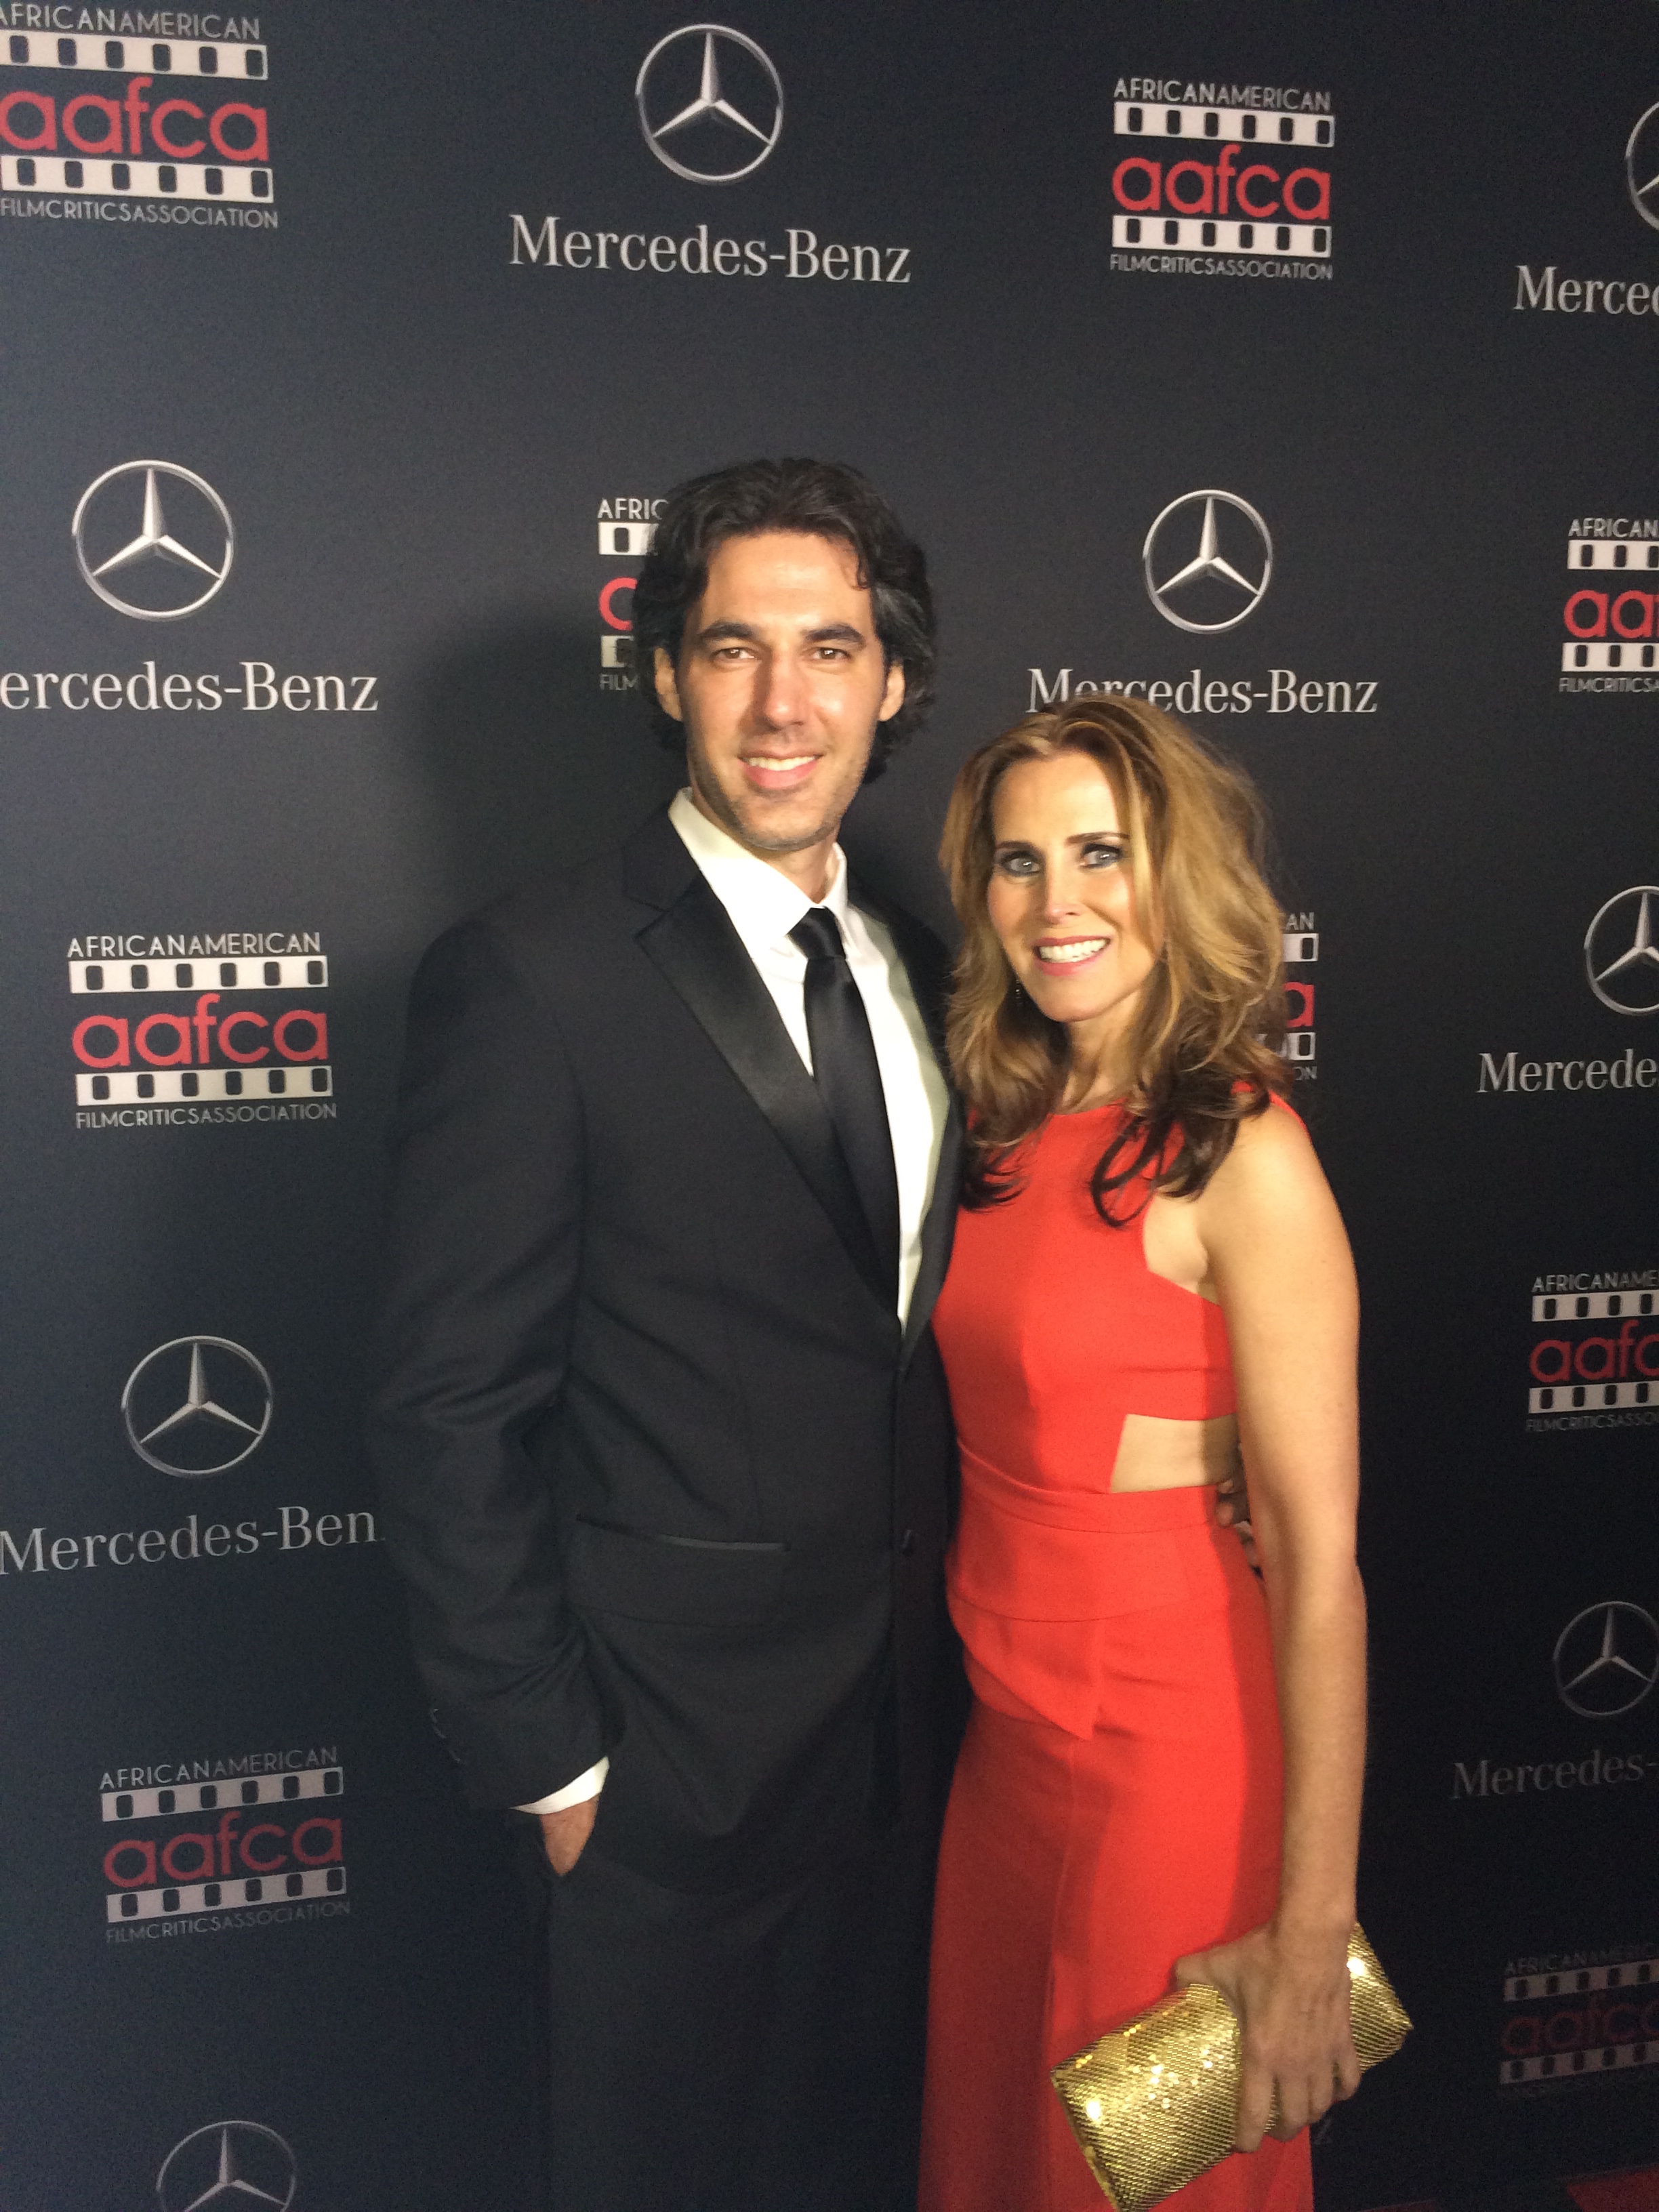 Mercedes Oscar Party 2015